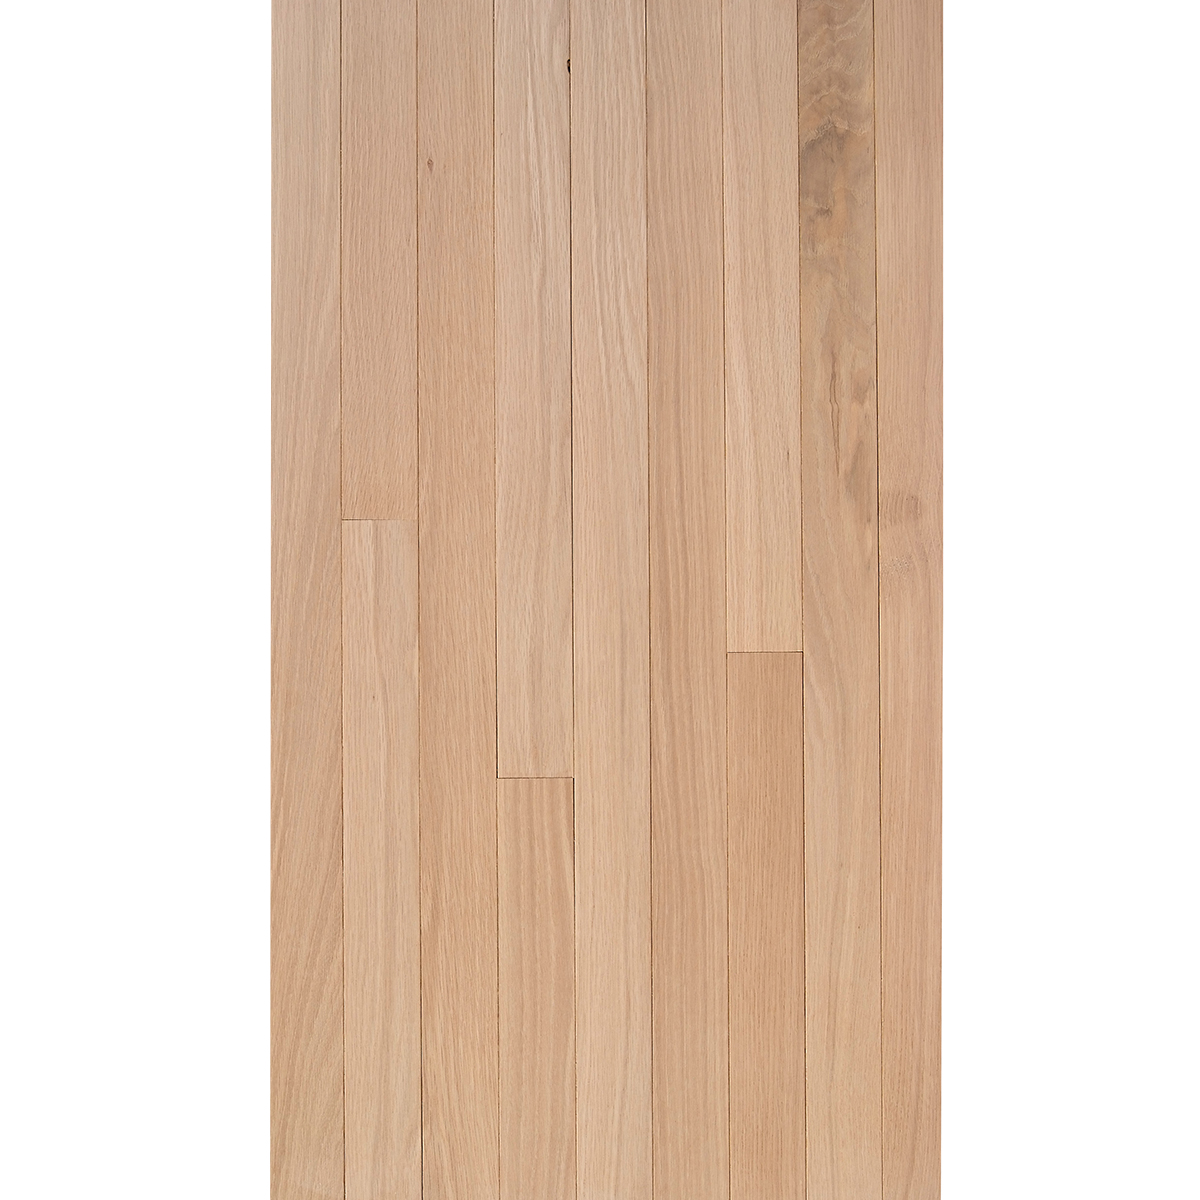 White Oak 3 4 X 2 1 Select Grade, 3 4 White Oak Hardwood Flooring Unfinished